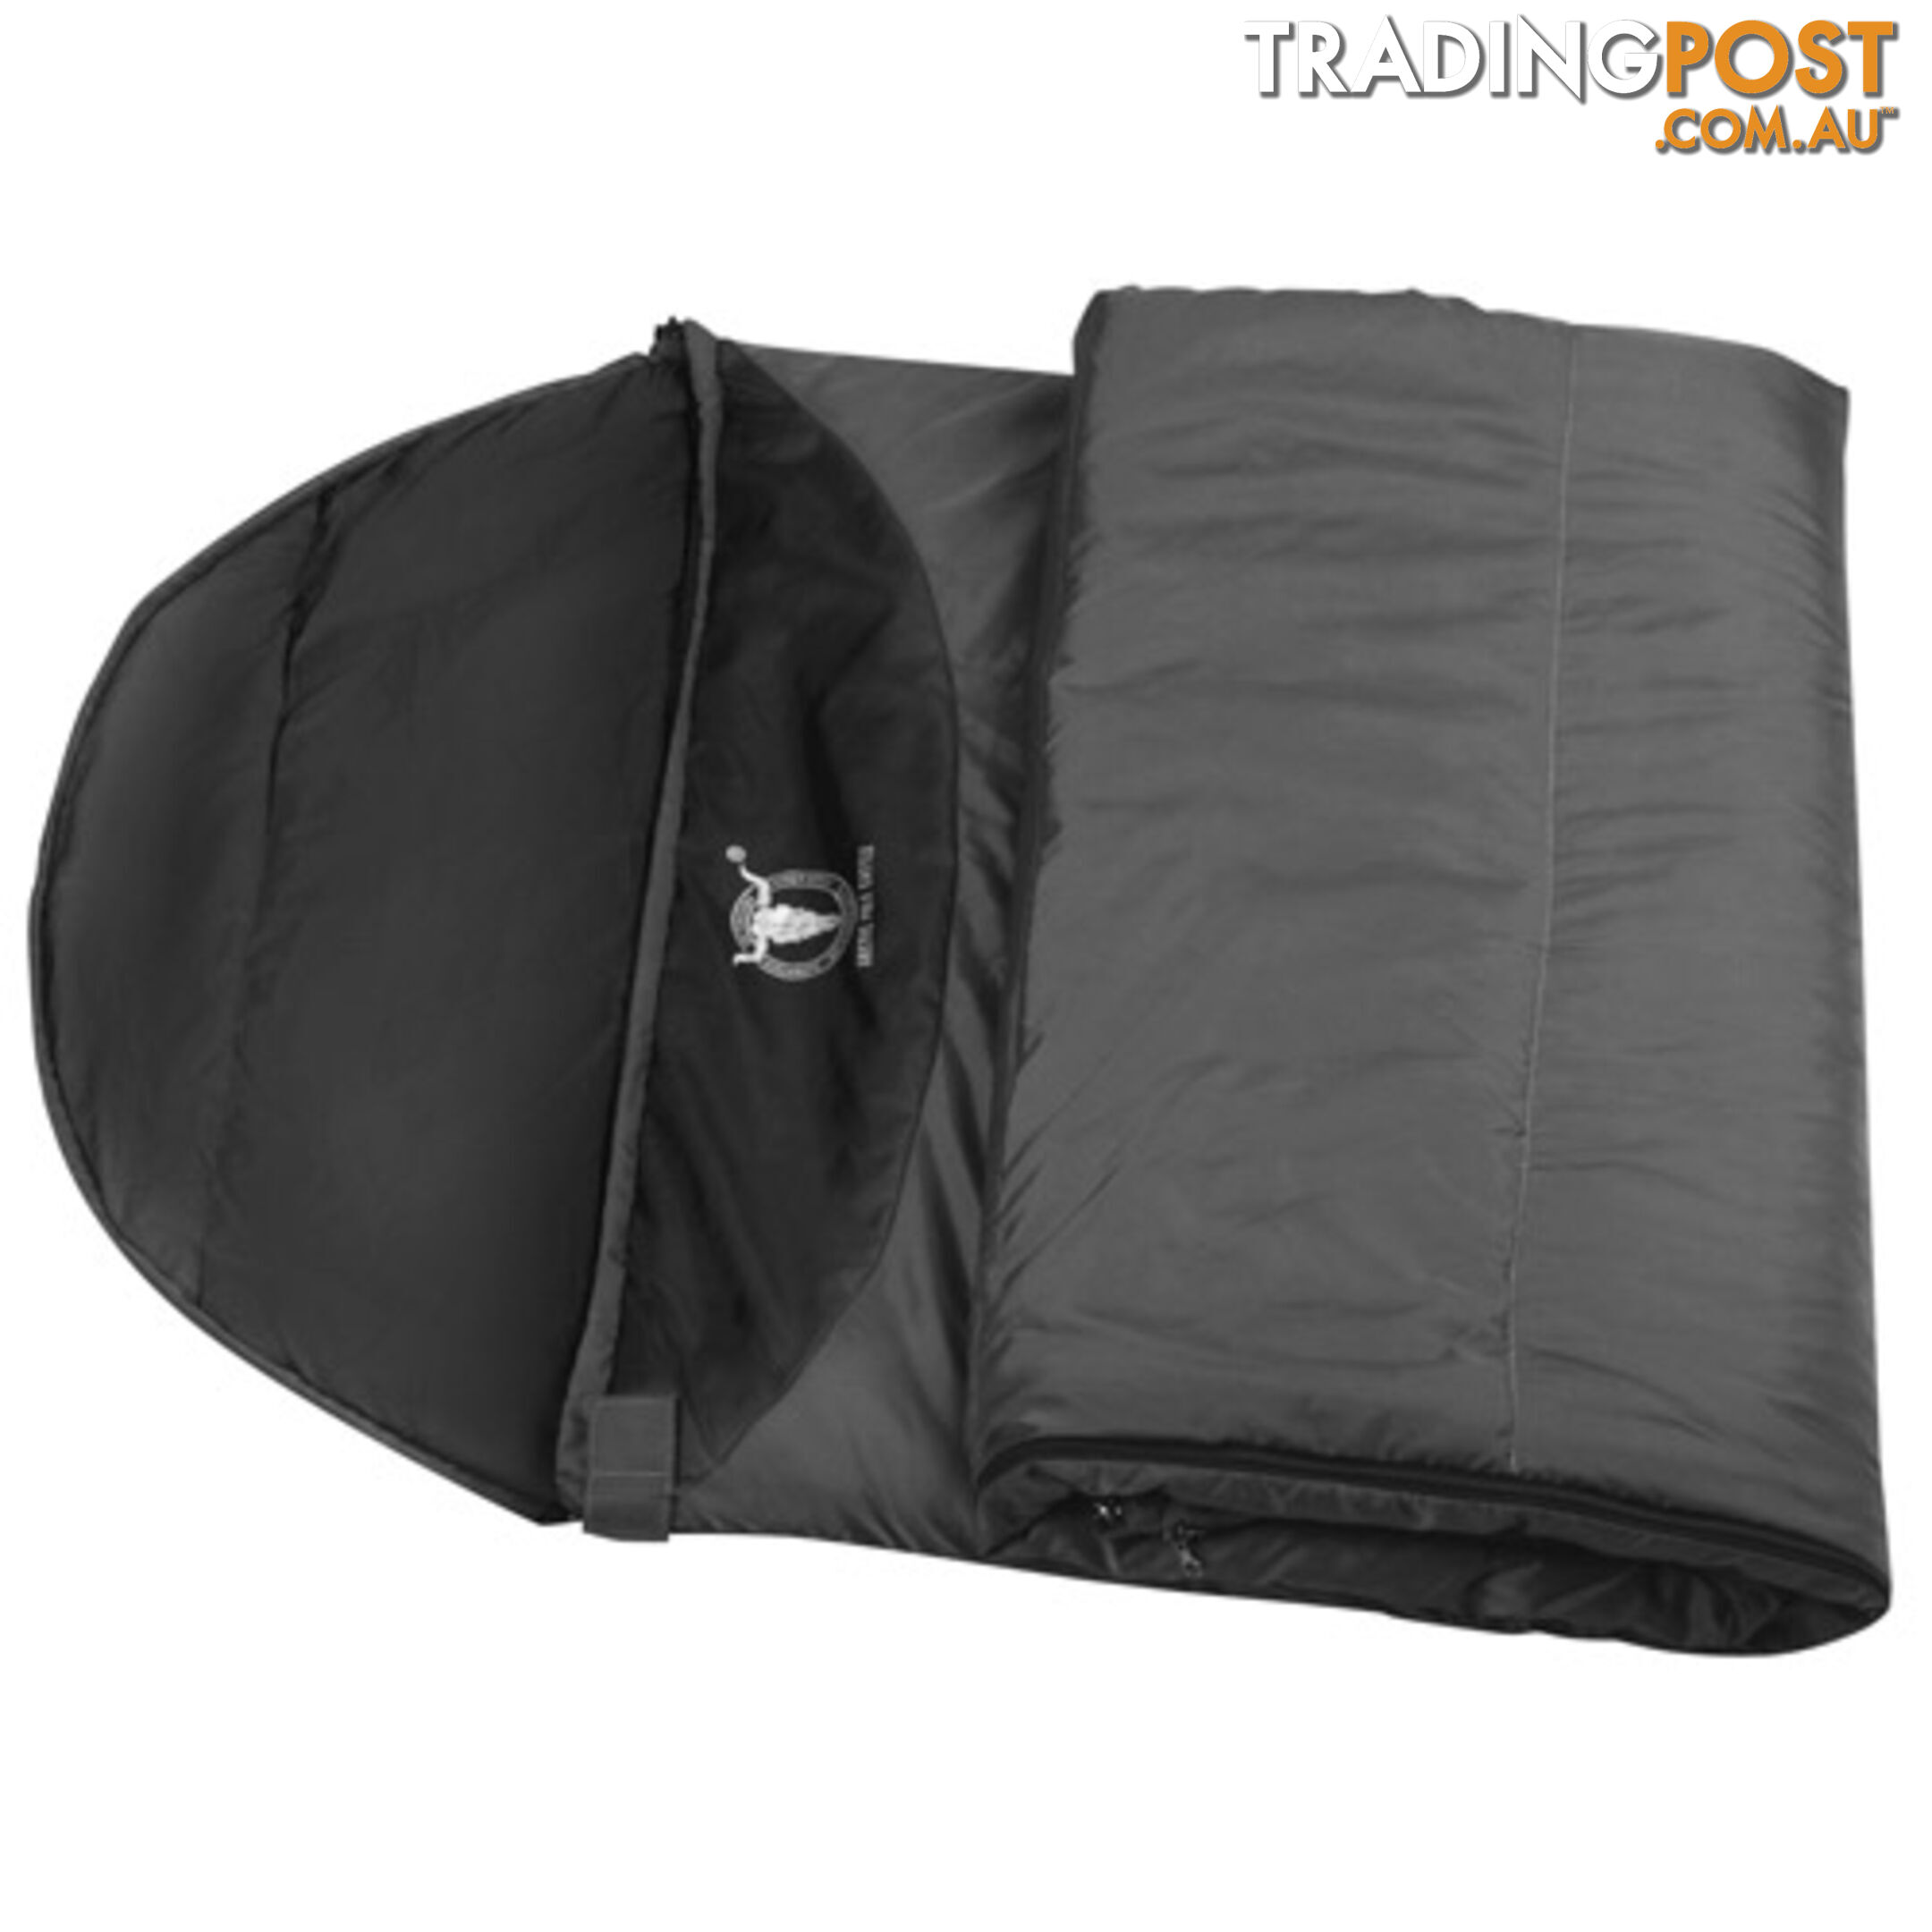 Single Camping Envelope Sleeping Bag Grey Black